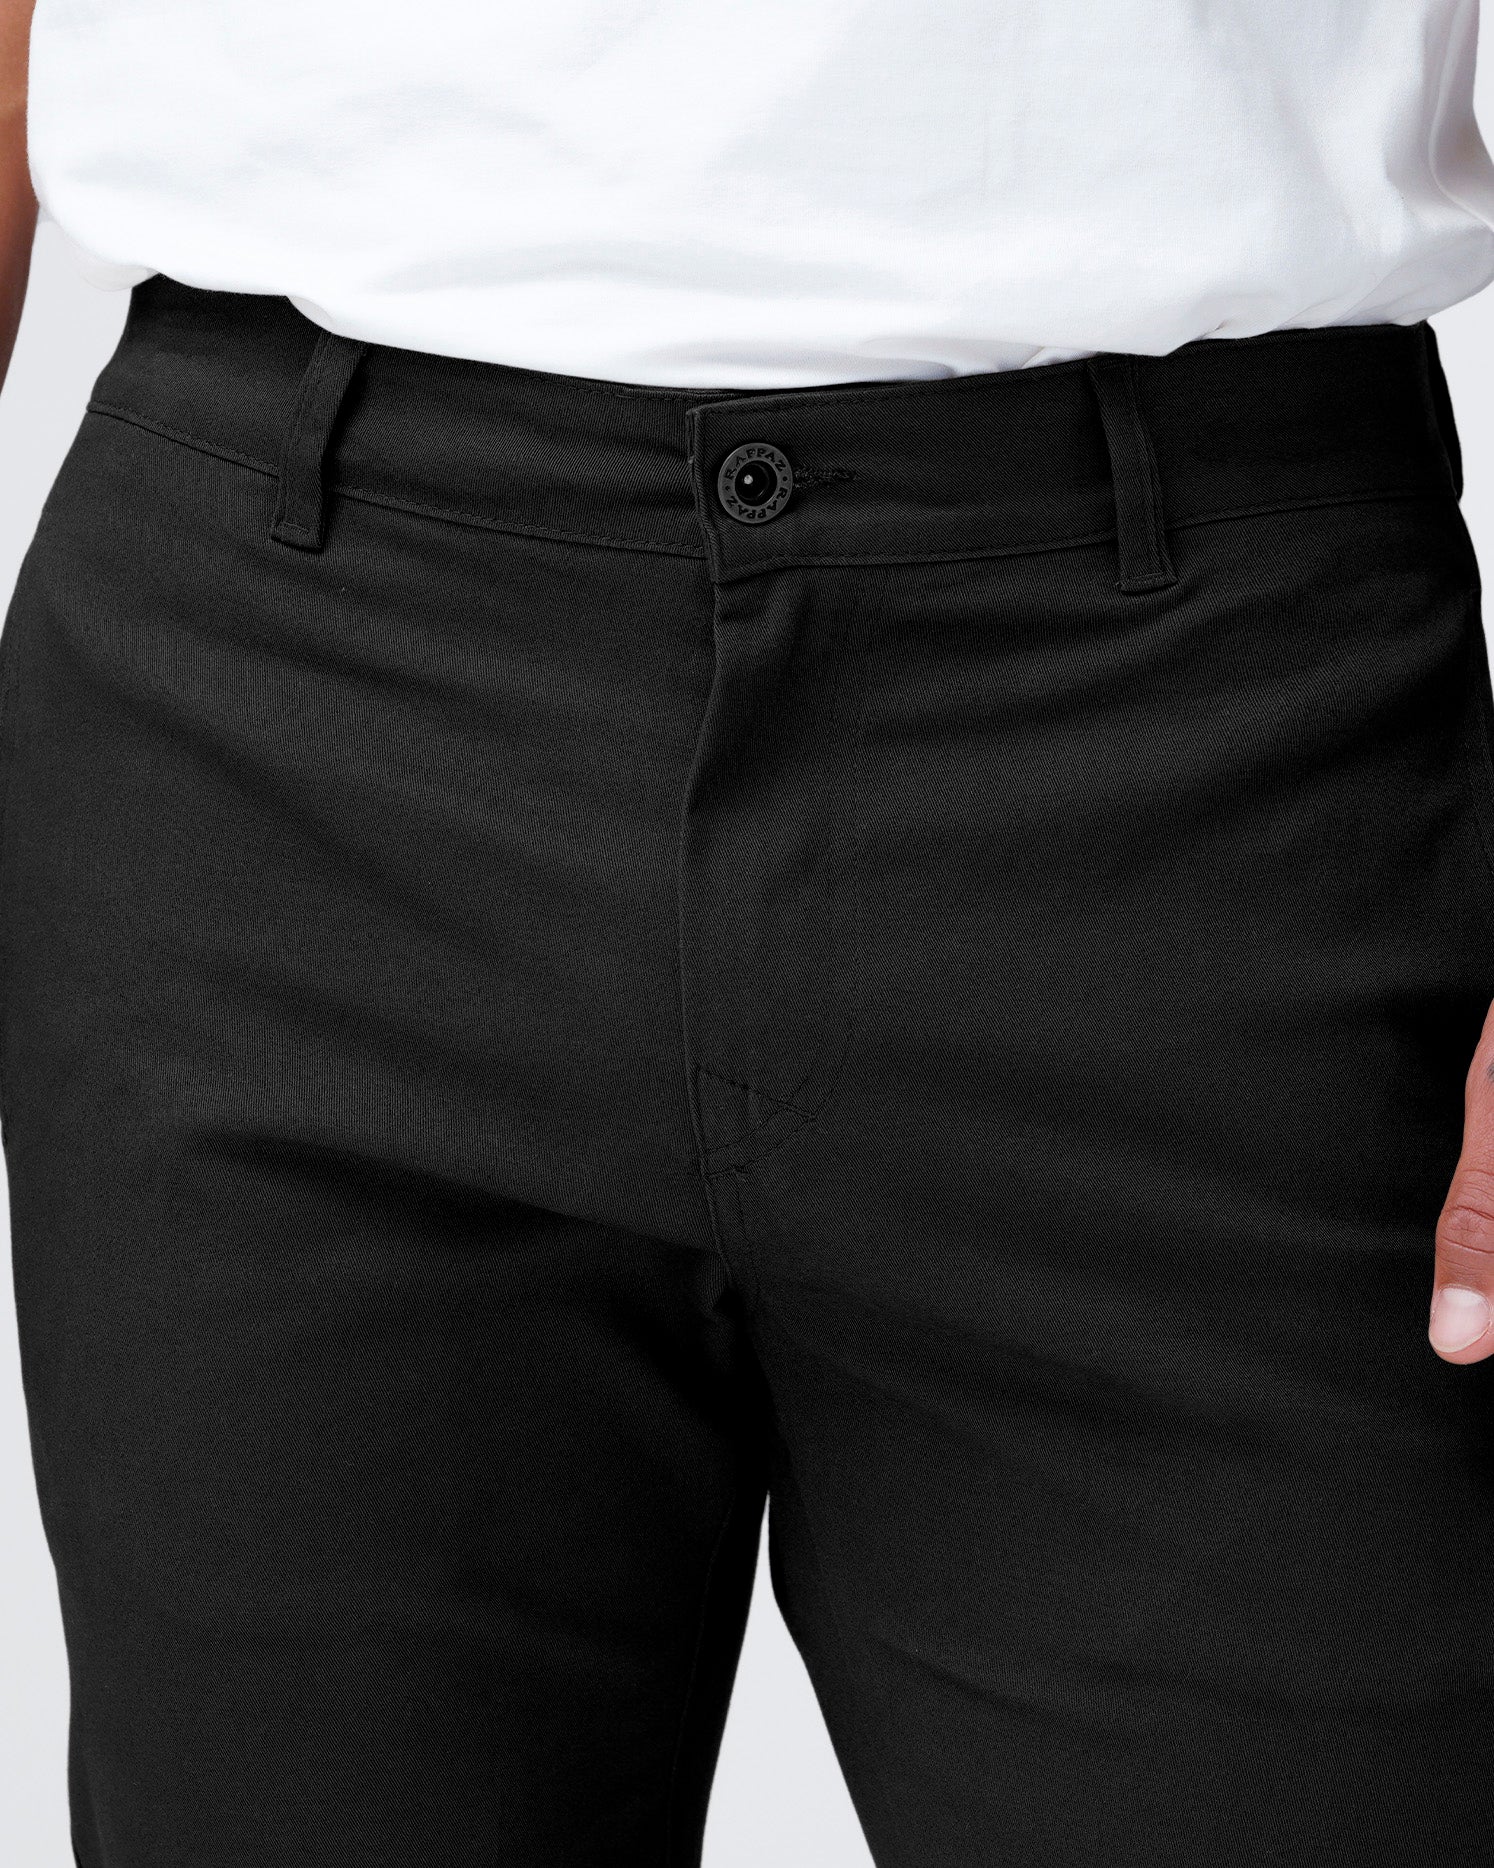 Pantalón new chino color negro, kaki y chocolate con elongación, de silueta semi amplia, bota recta y&nbsp; bolsillos funcionales, te aportará el toque de audacia, elegancia y comodidad que necesitas para un momento más formal.